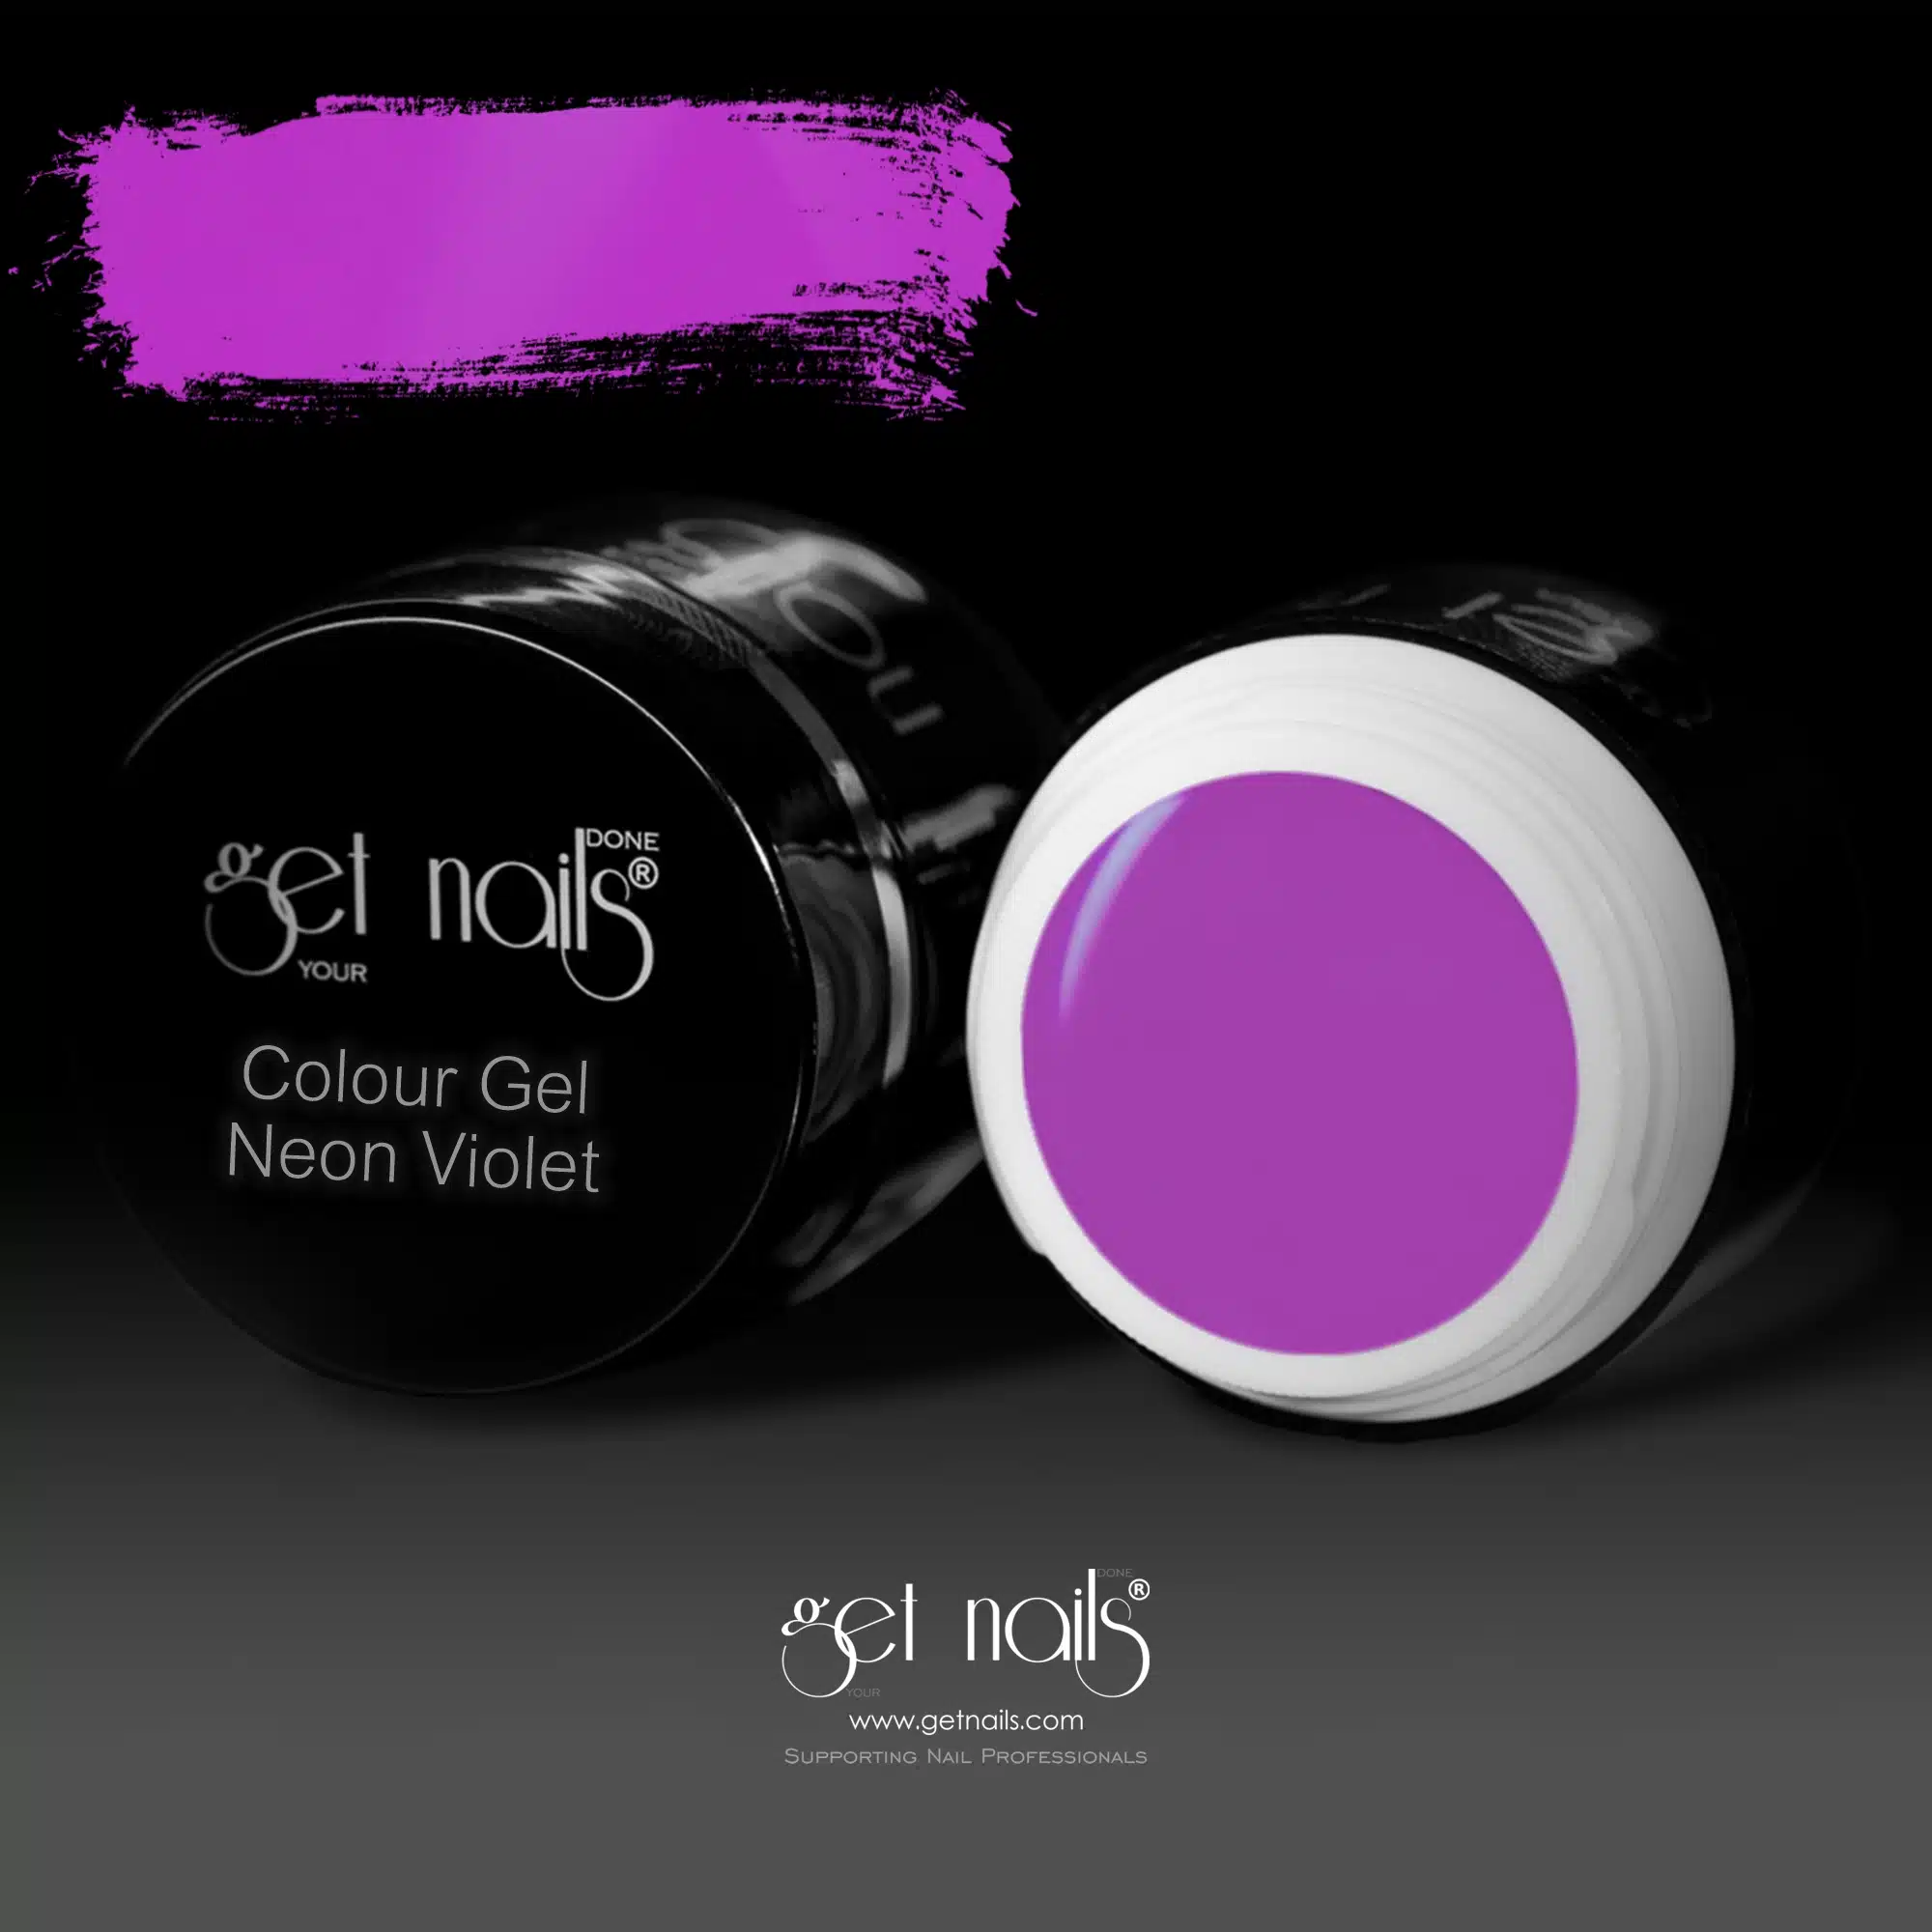 Get Nails Austria - Colour Gel Neon Violet 5g